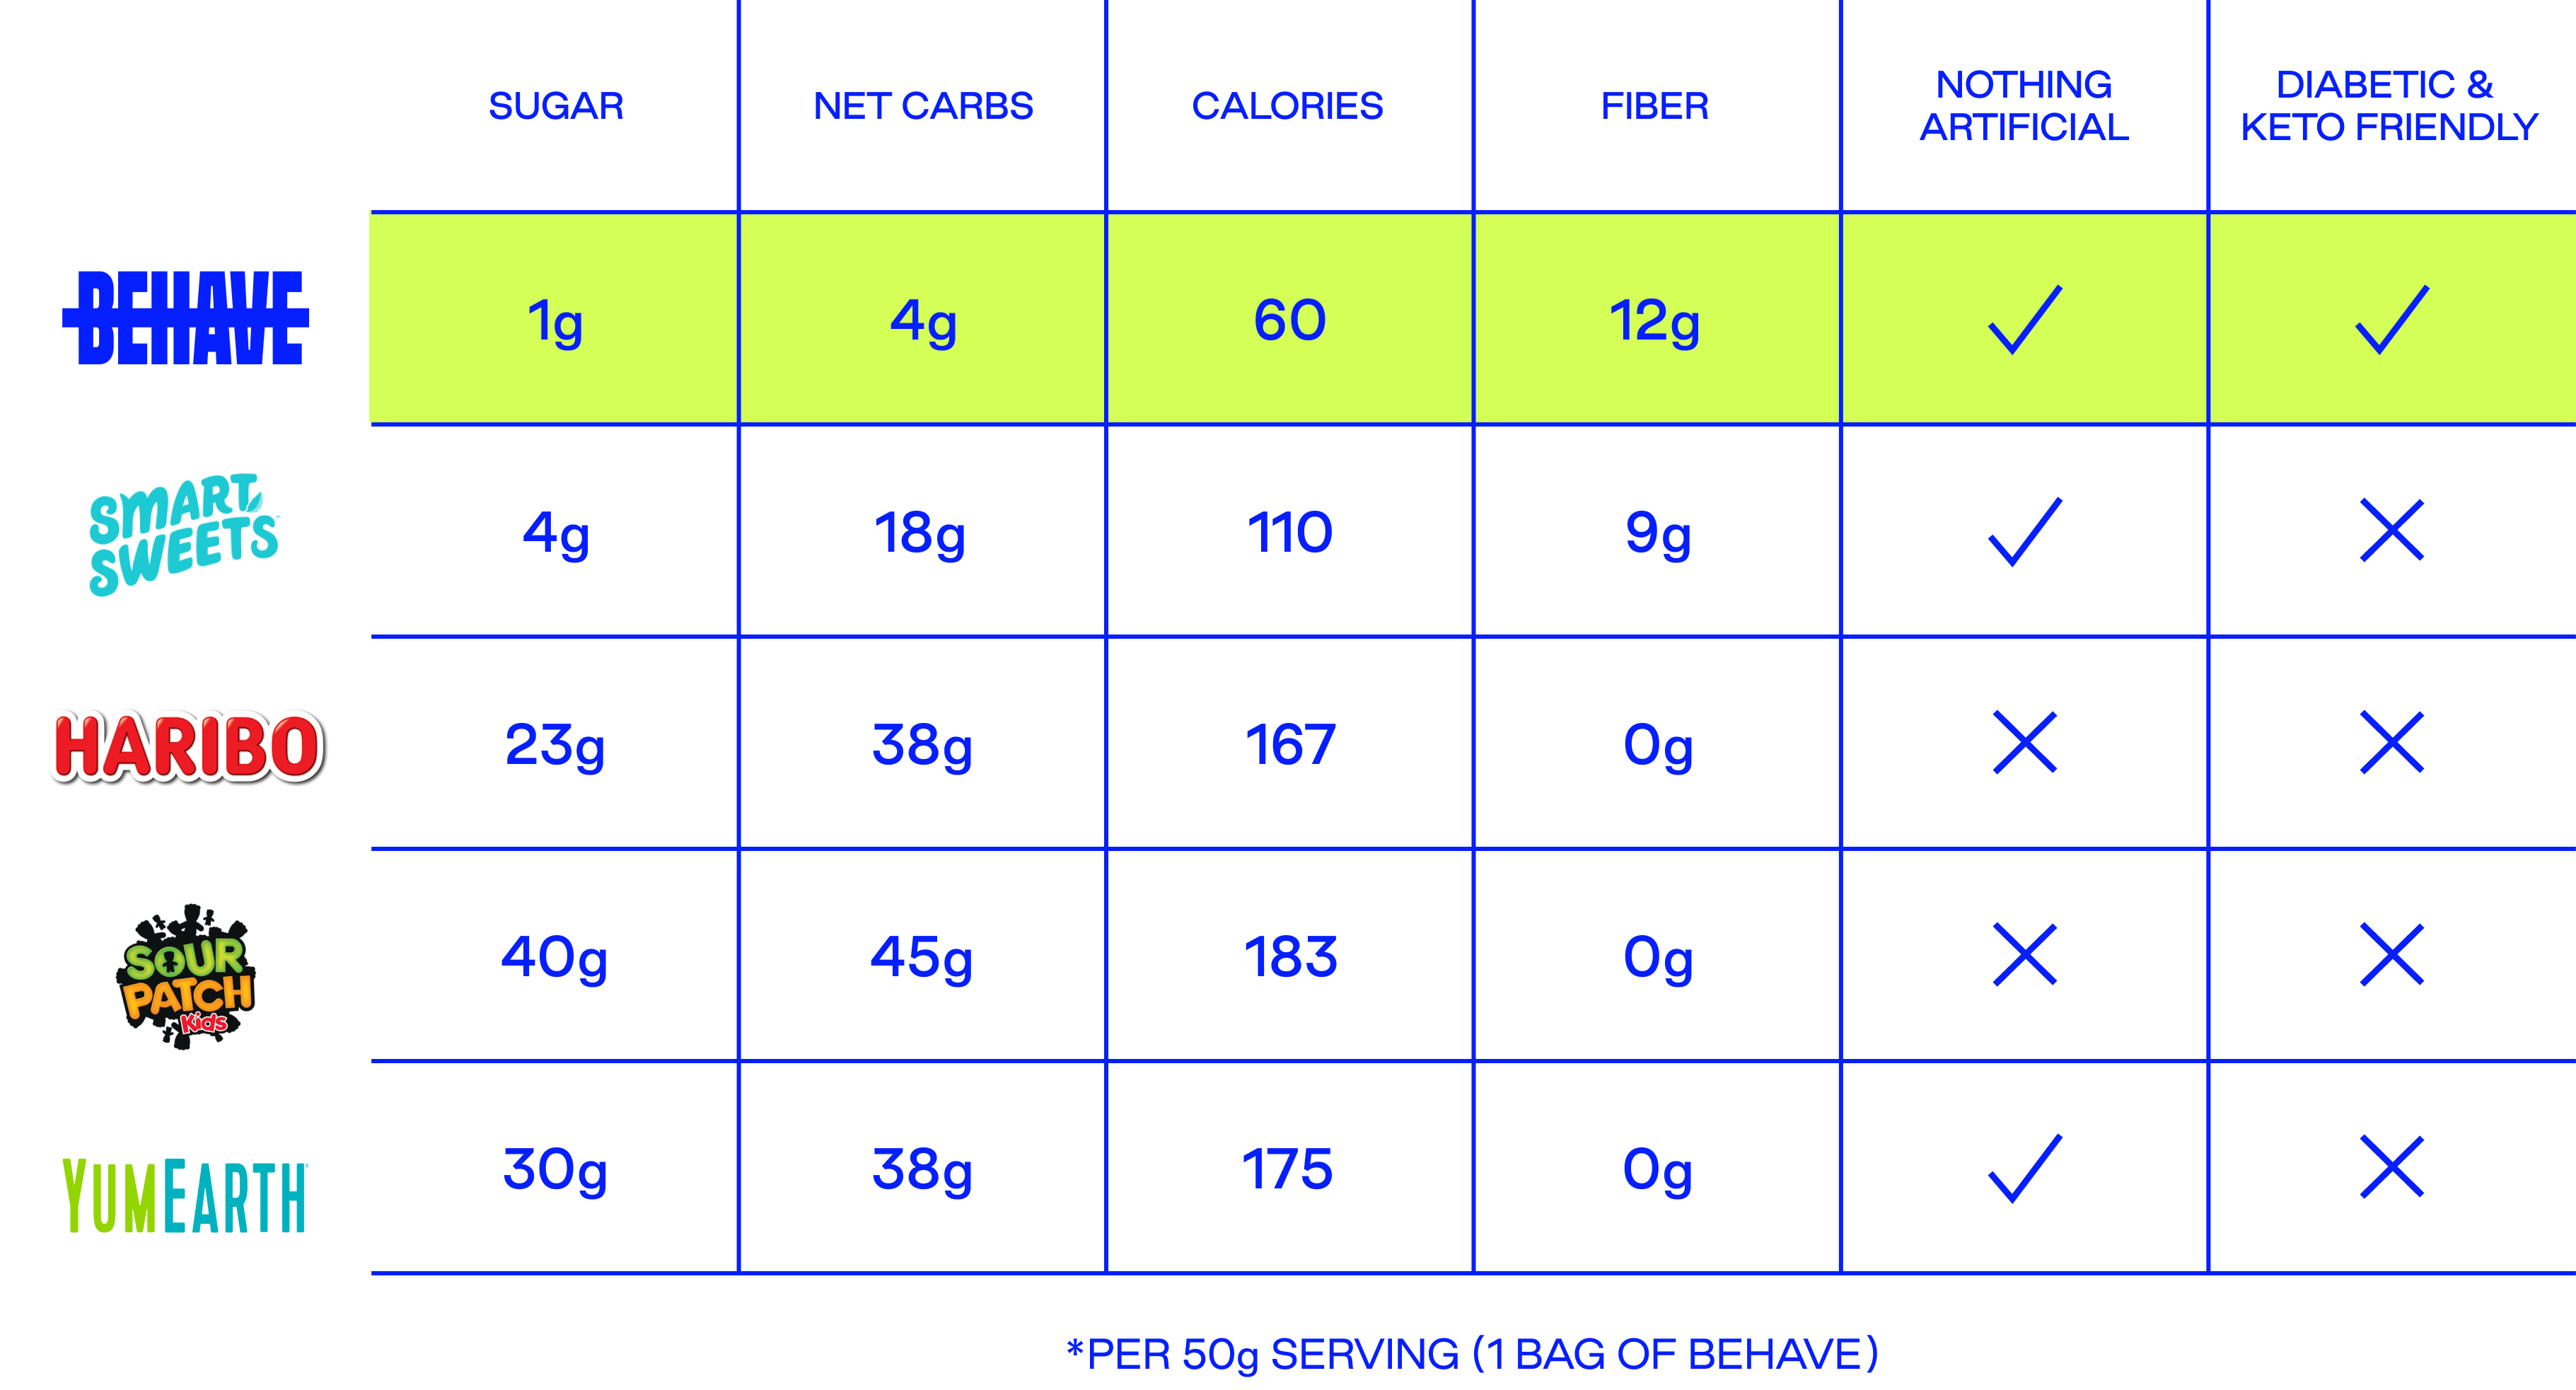 Nutritional content comparison matrix